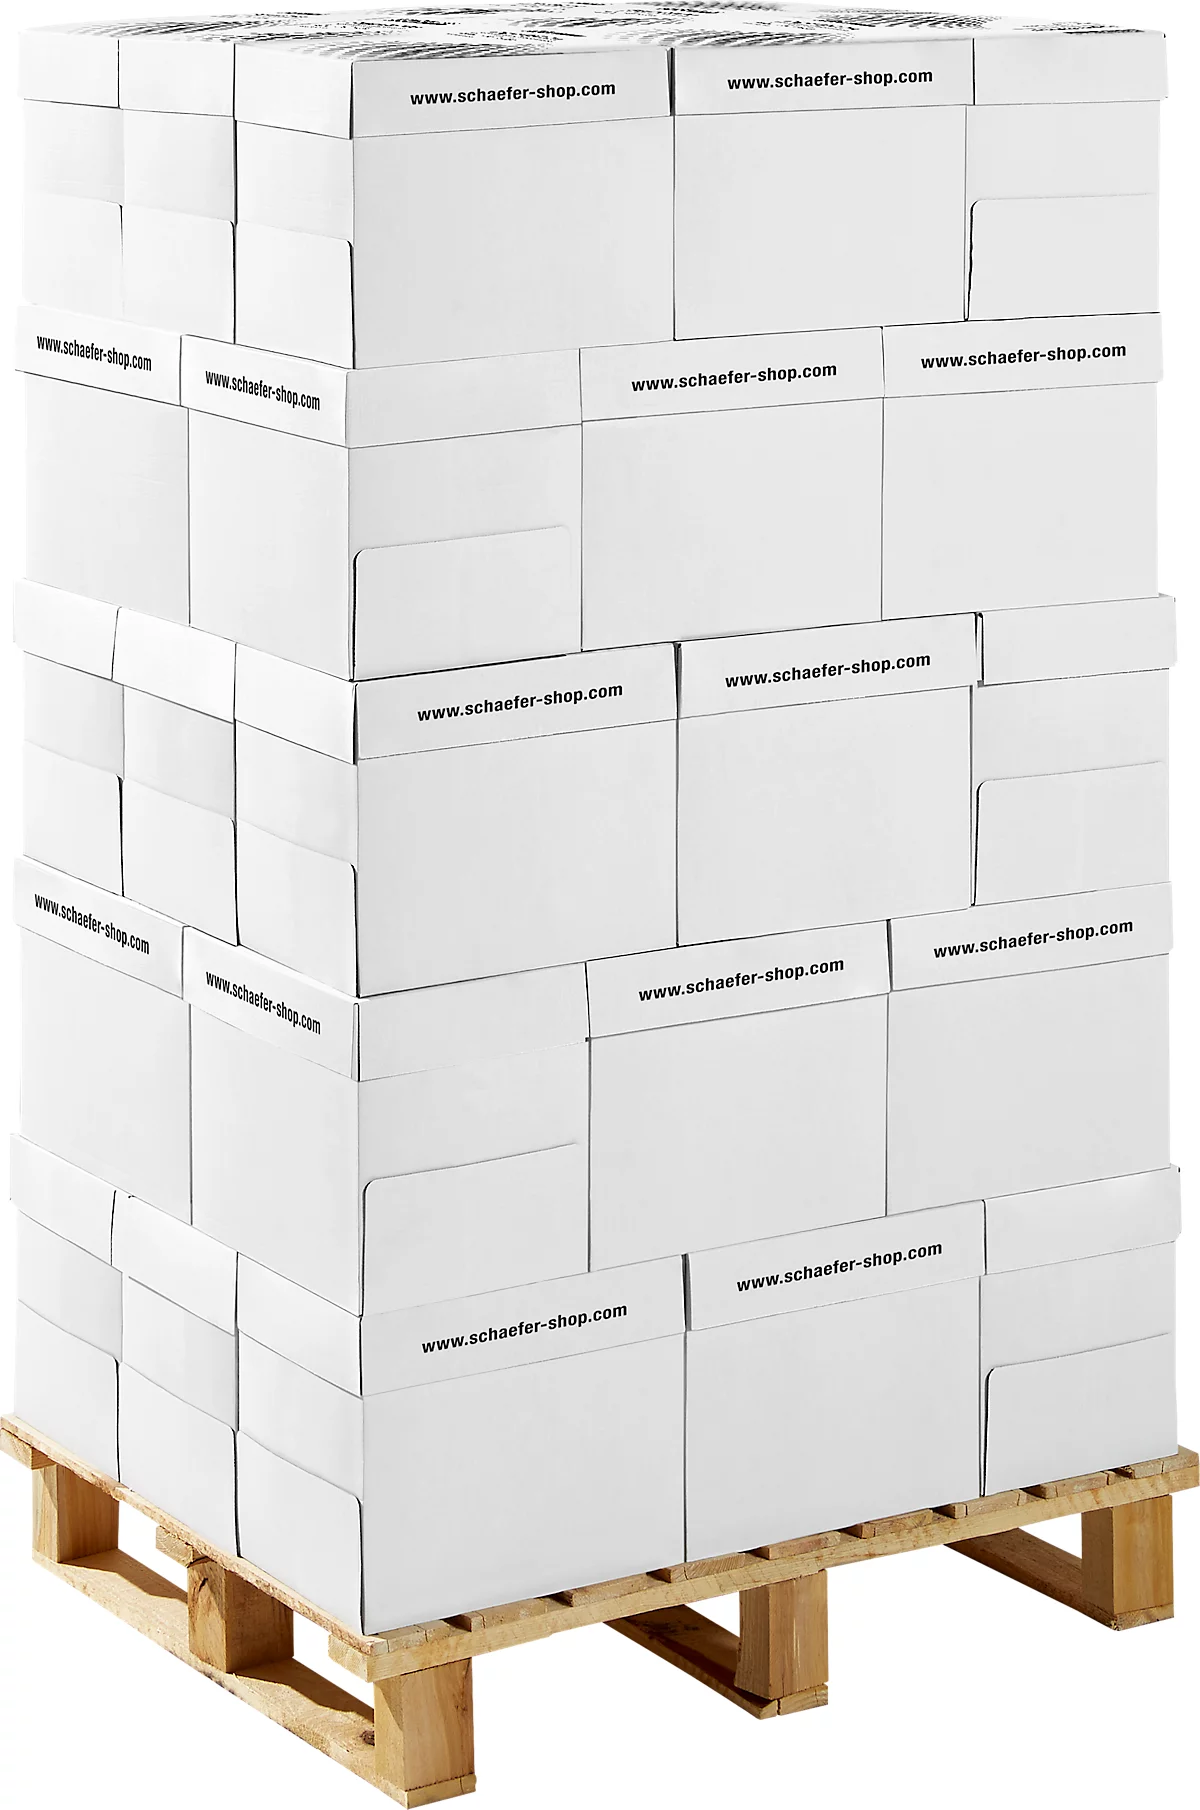 Schäfer Shop Select Papel de copia Paper@Print, DIN A4, 80 g/m², blanco, 1 palet = 200 x 500 hojas + carro de plataforma GRATIS